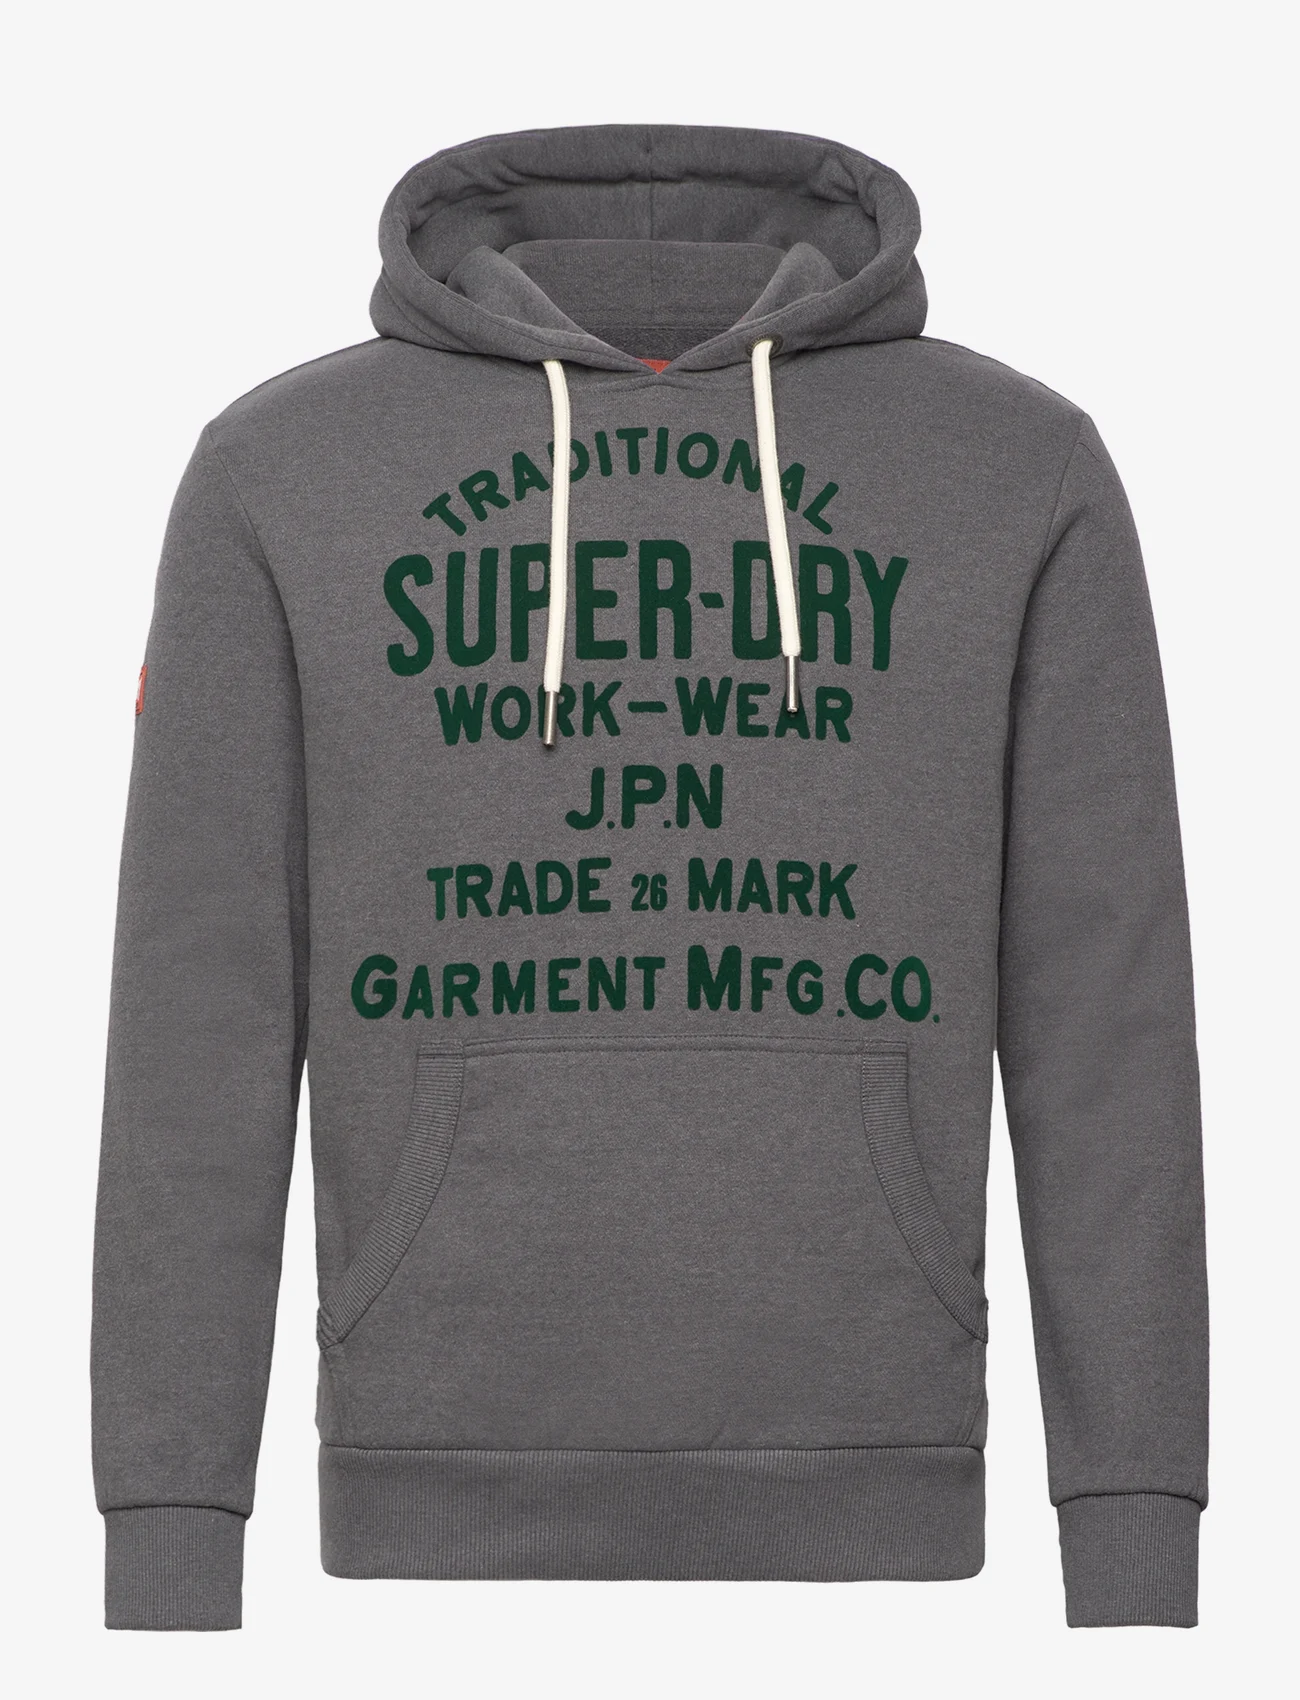 Superdry - WORKWEAR FLOCK GRAPHIC HOODIE - megztiniai ir džemperiai - granite grey marl - 0